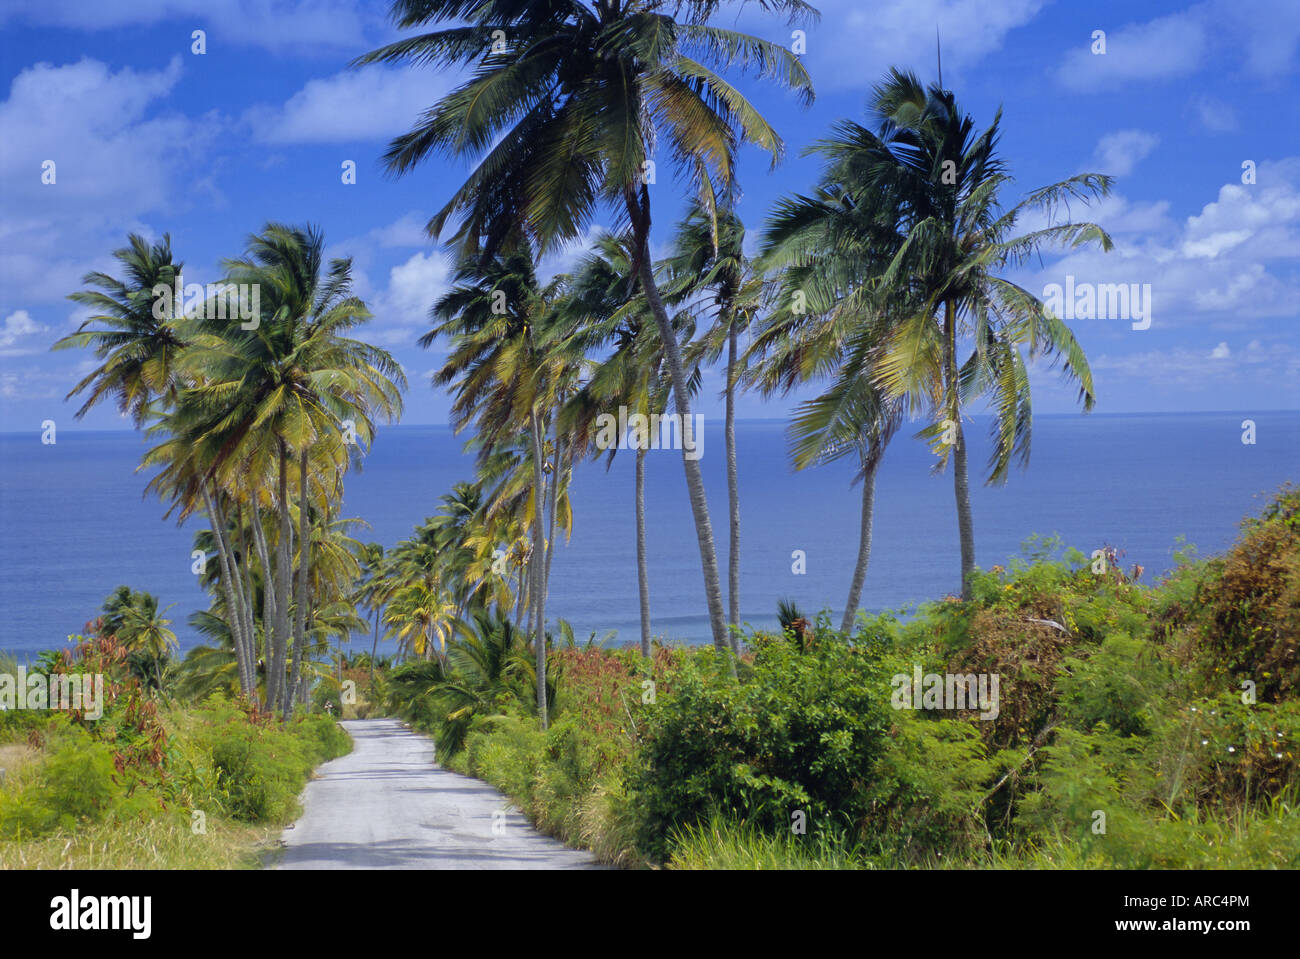 Route bordée de palmiers à Bethsabée, Barbade, Antilles, Caraïbes, Amérique Centrale Banque D'Images